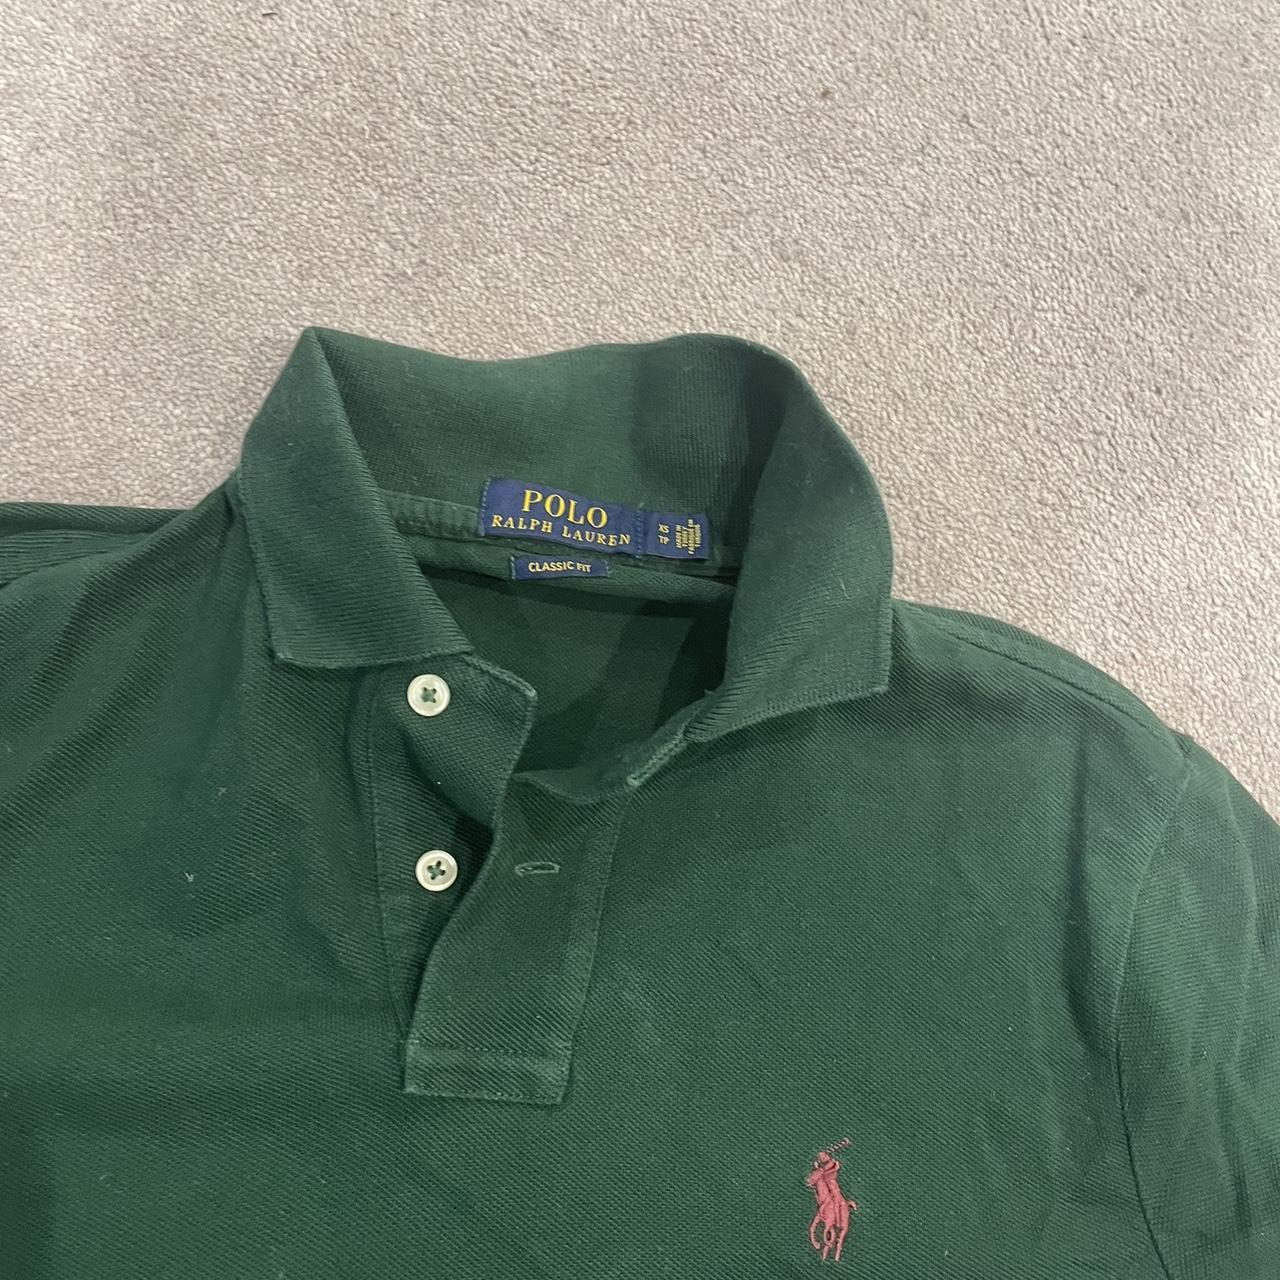 Ralph lauren polo shirt Green Size xs but fits... - Depop